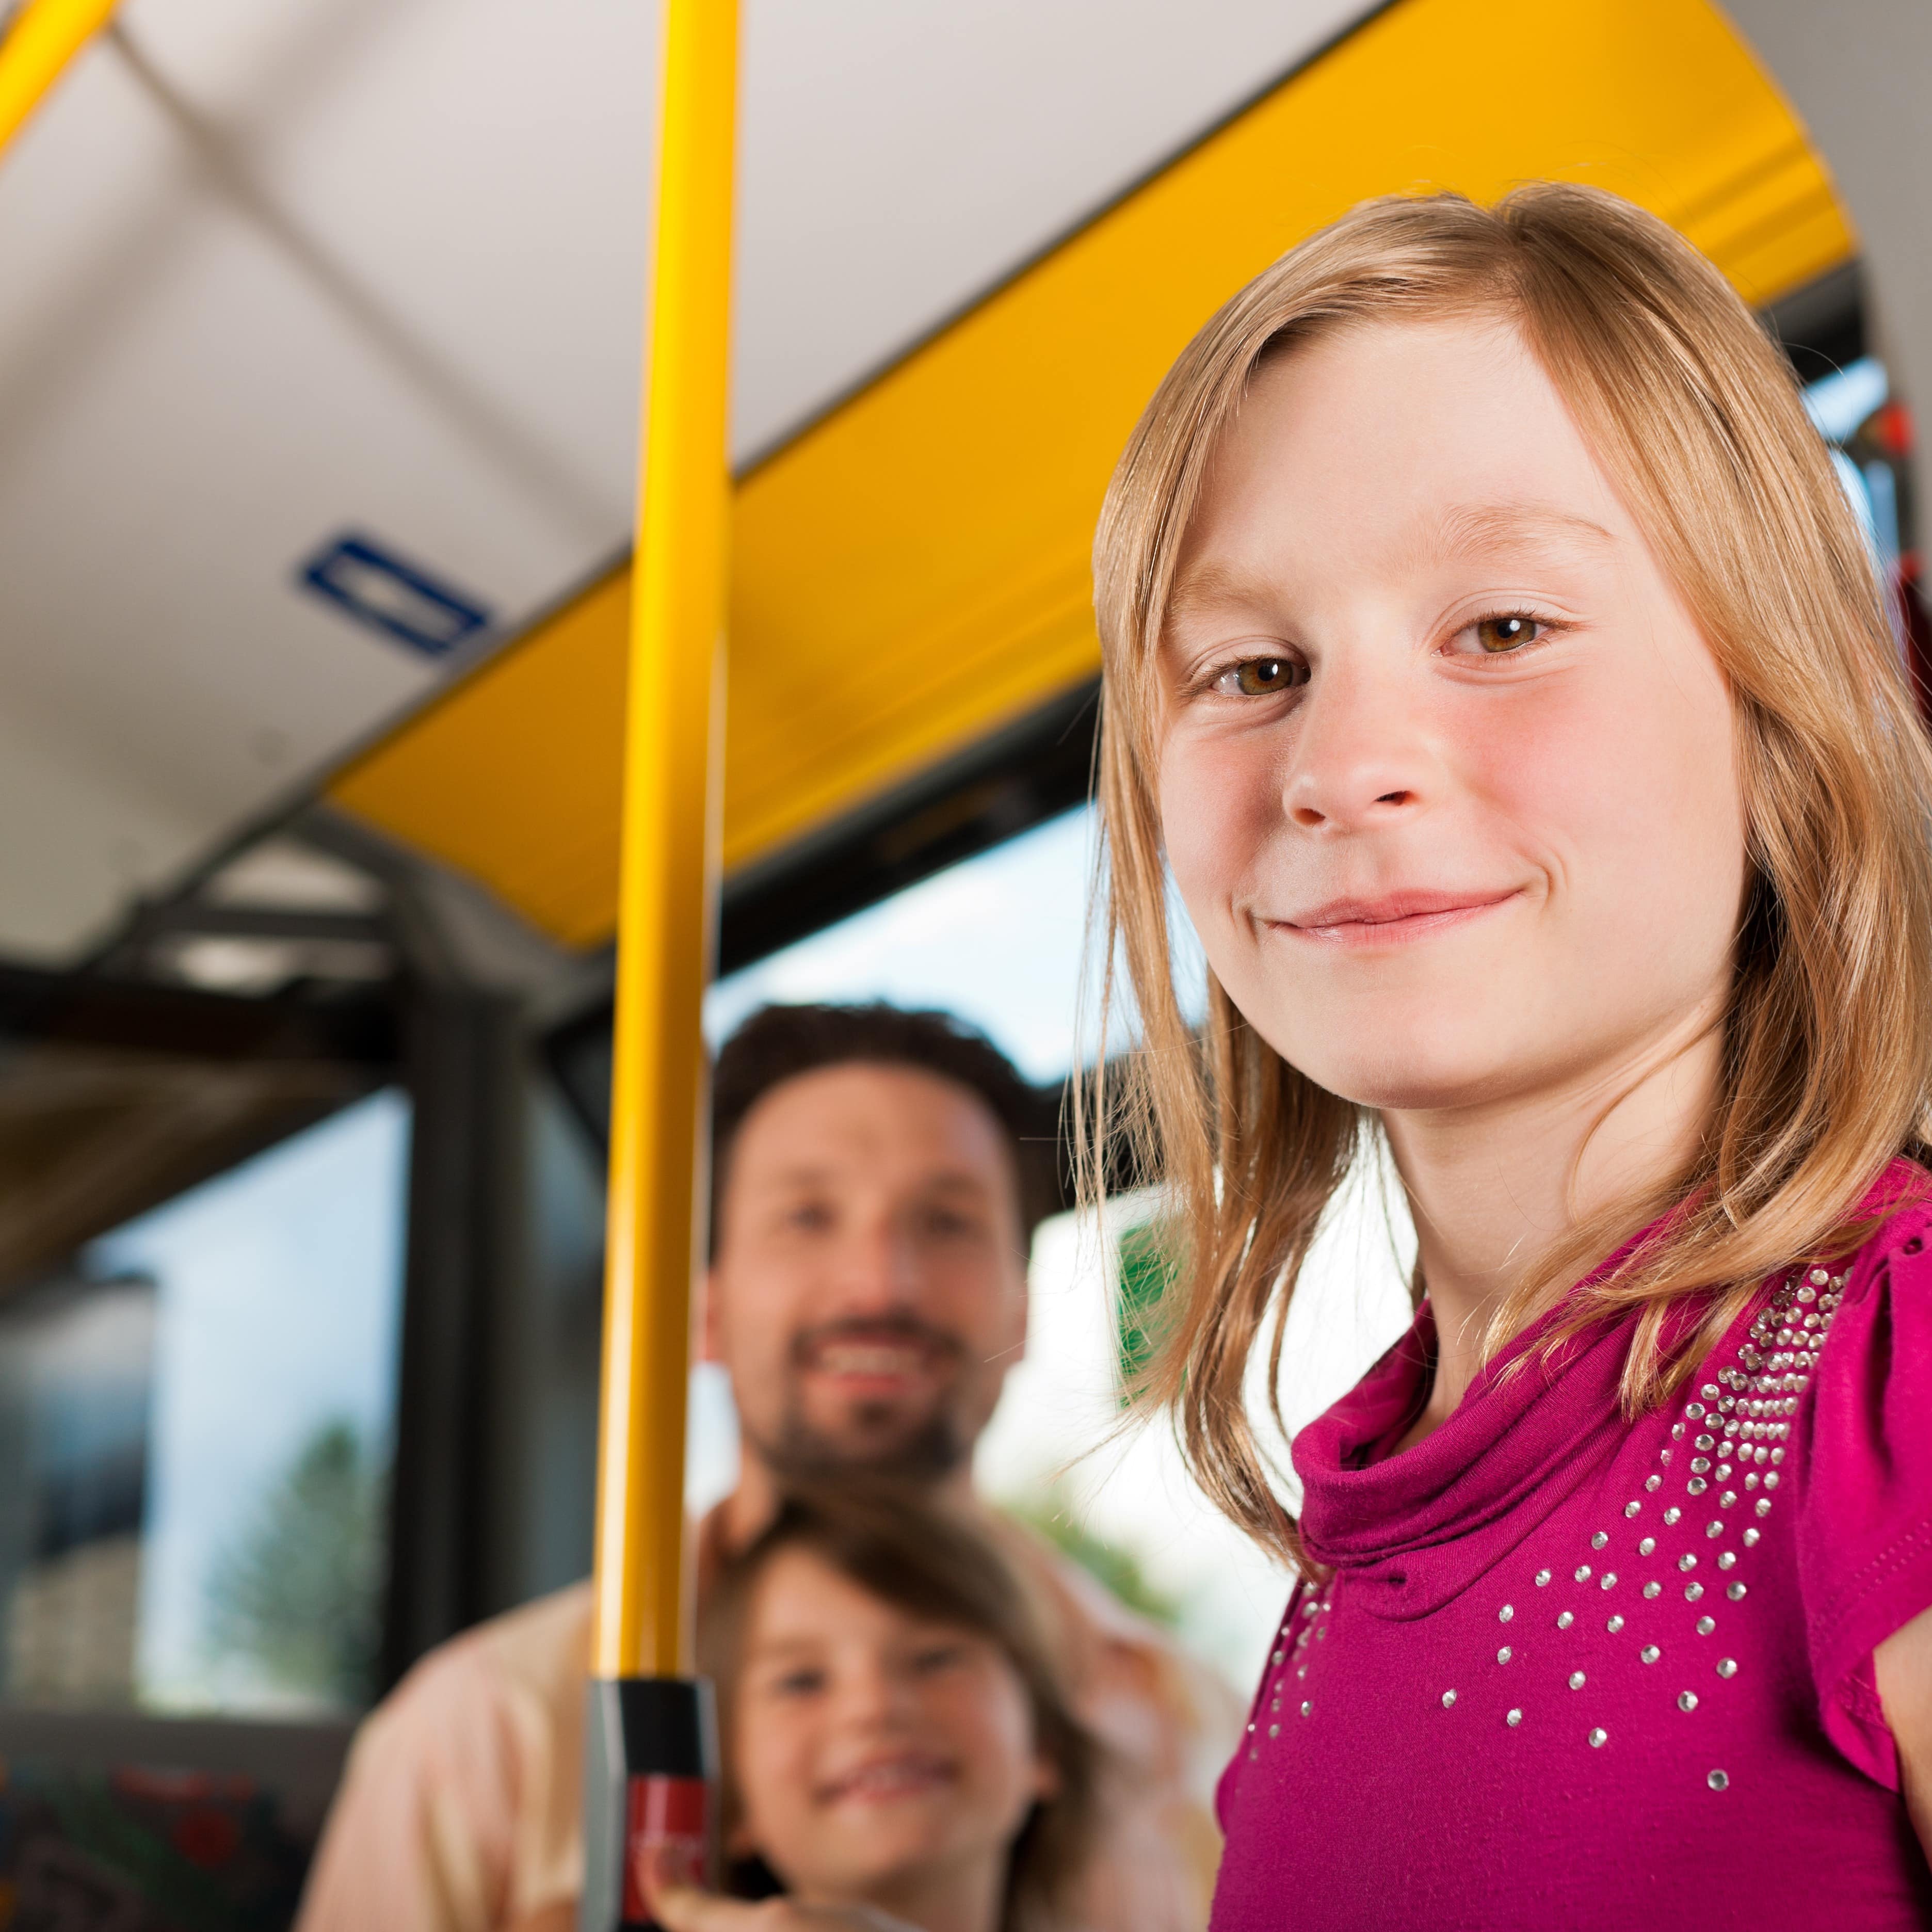 Mädchen in pinkem T-Shirt im Bus lächelt in die Kamera.